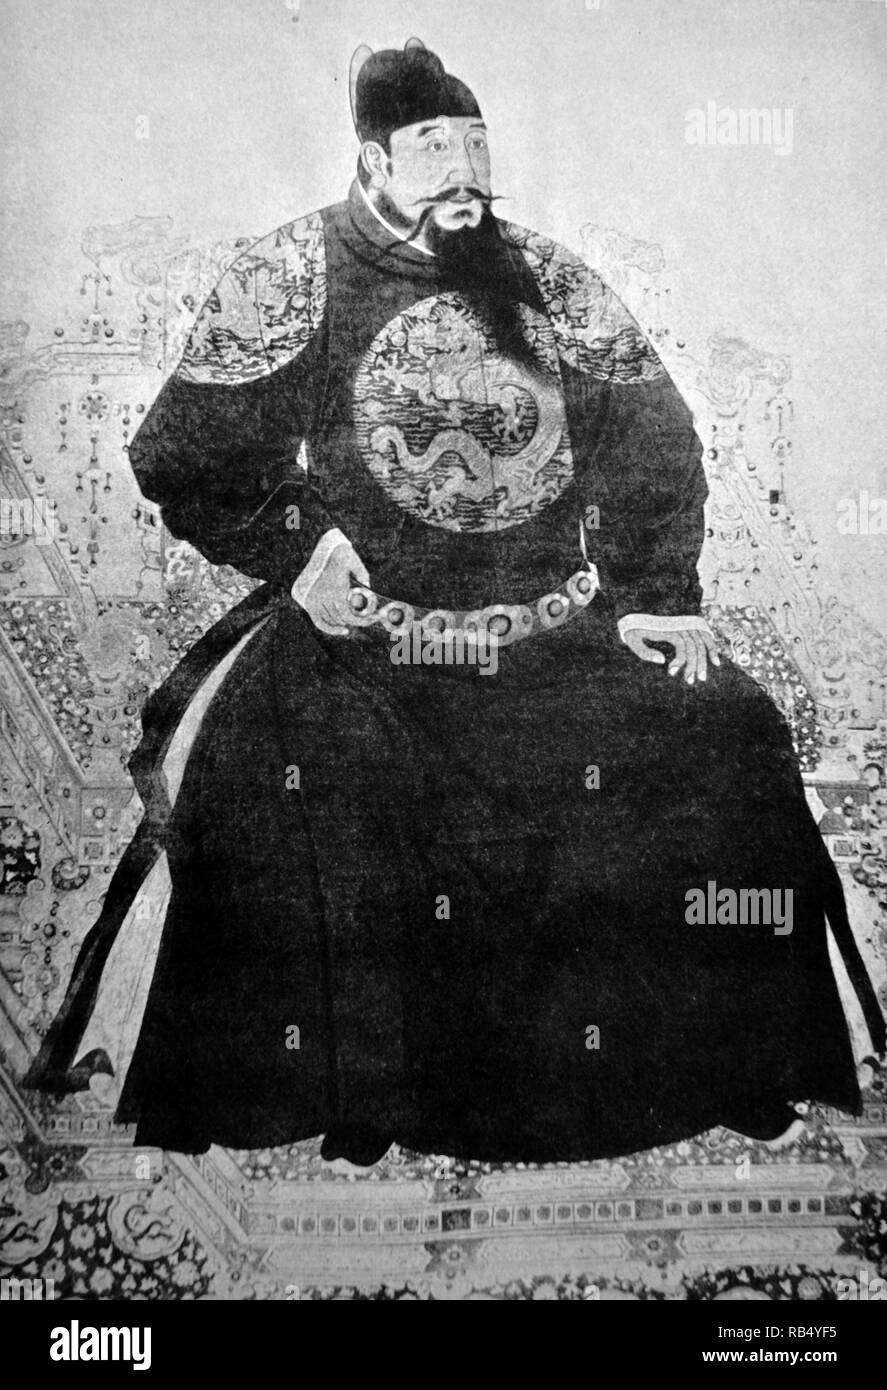 L'Empereur Yongle (1360 - 1424), anciennement le romanisés Yung-lo ou Yonglo Empereur, était le troisième empereur de la dynastie Ming en Chine, régnant de 1402 à 1424 Banque D'Images